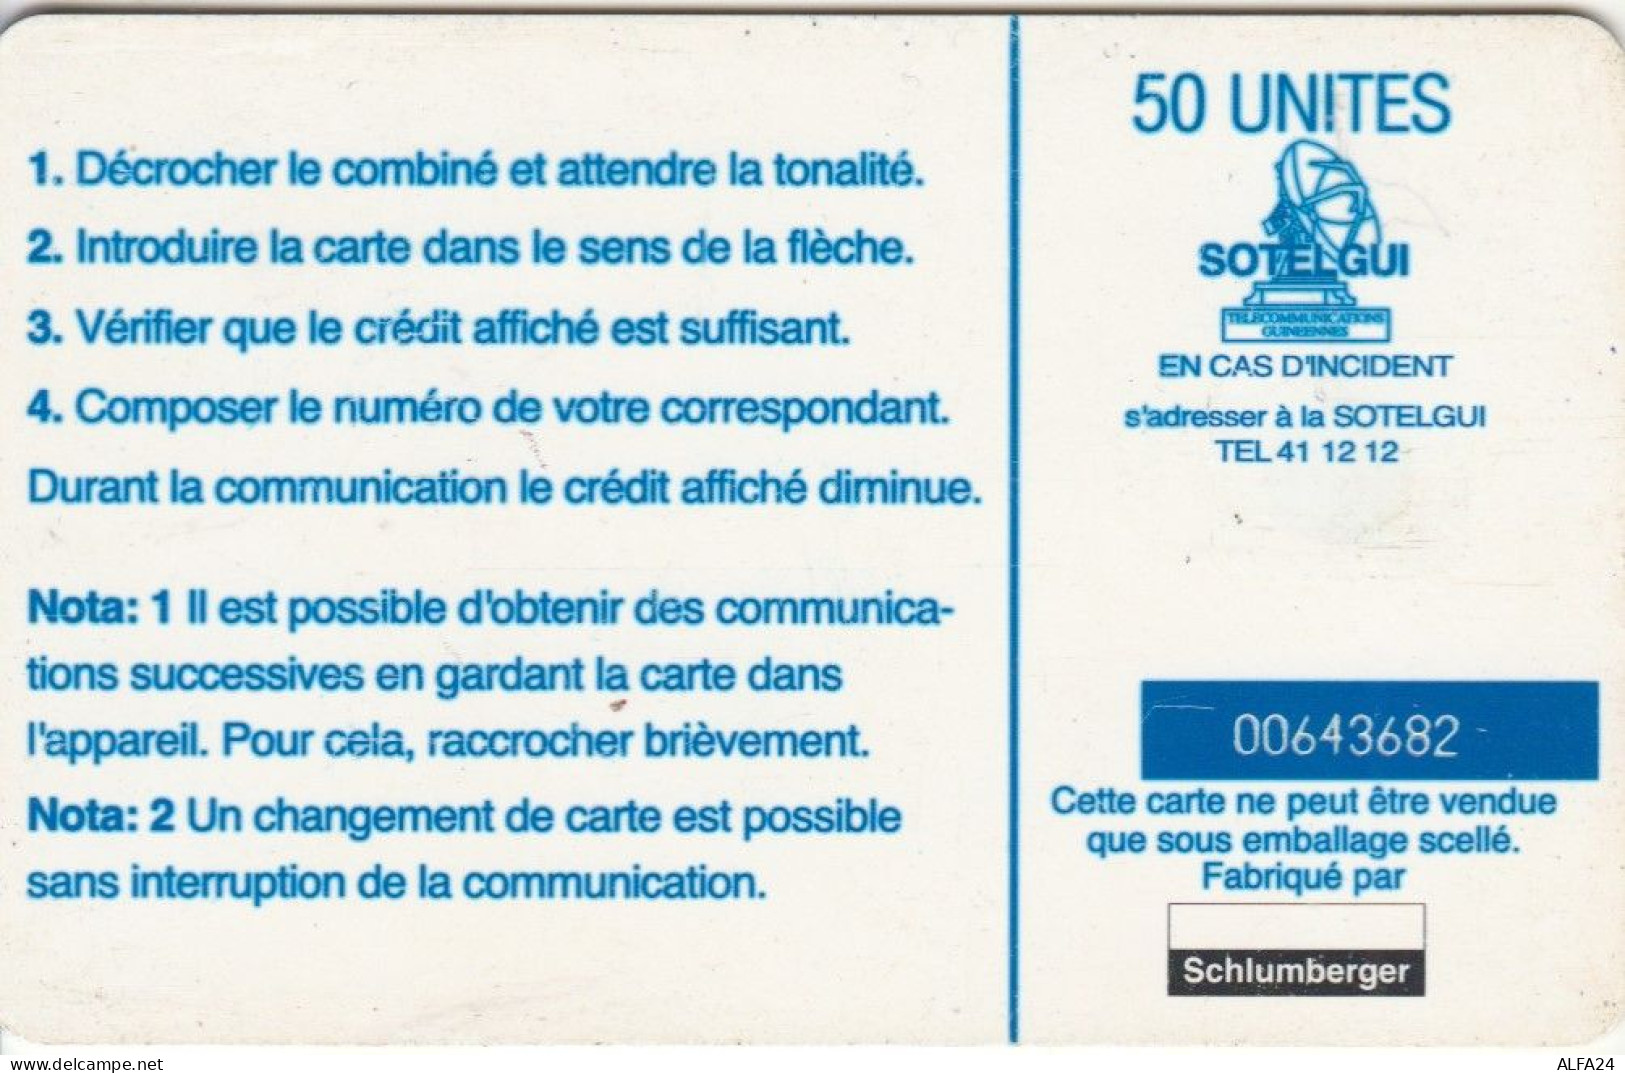 PHONE CARD GUINEA (E72.10.1 - Guinée